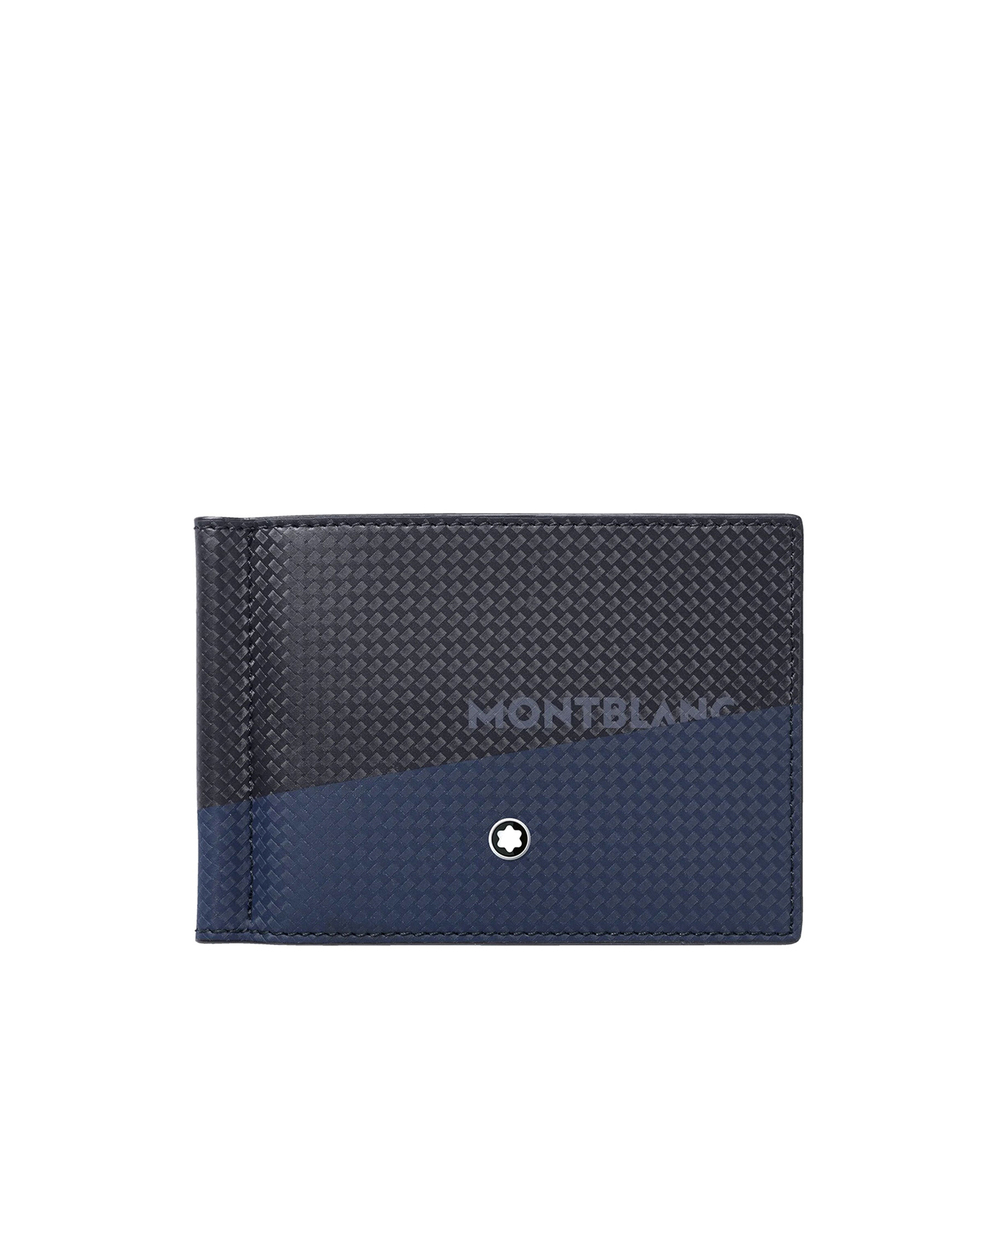 Кожаный бумажник Montblanc Extreme 2.0 6cc Montblanc 128614, черный цвет • Купить в интернет-магазине Kameron